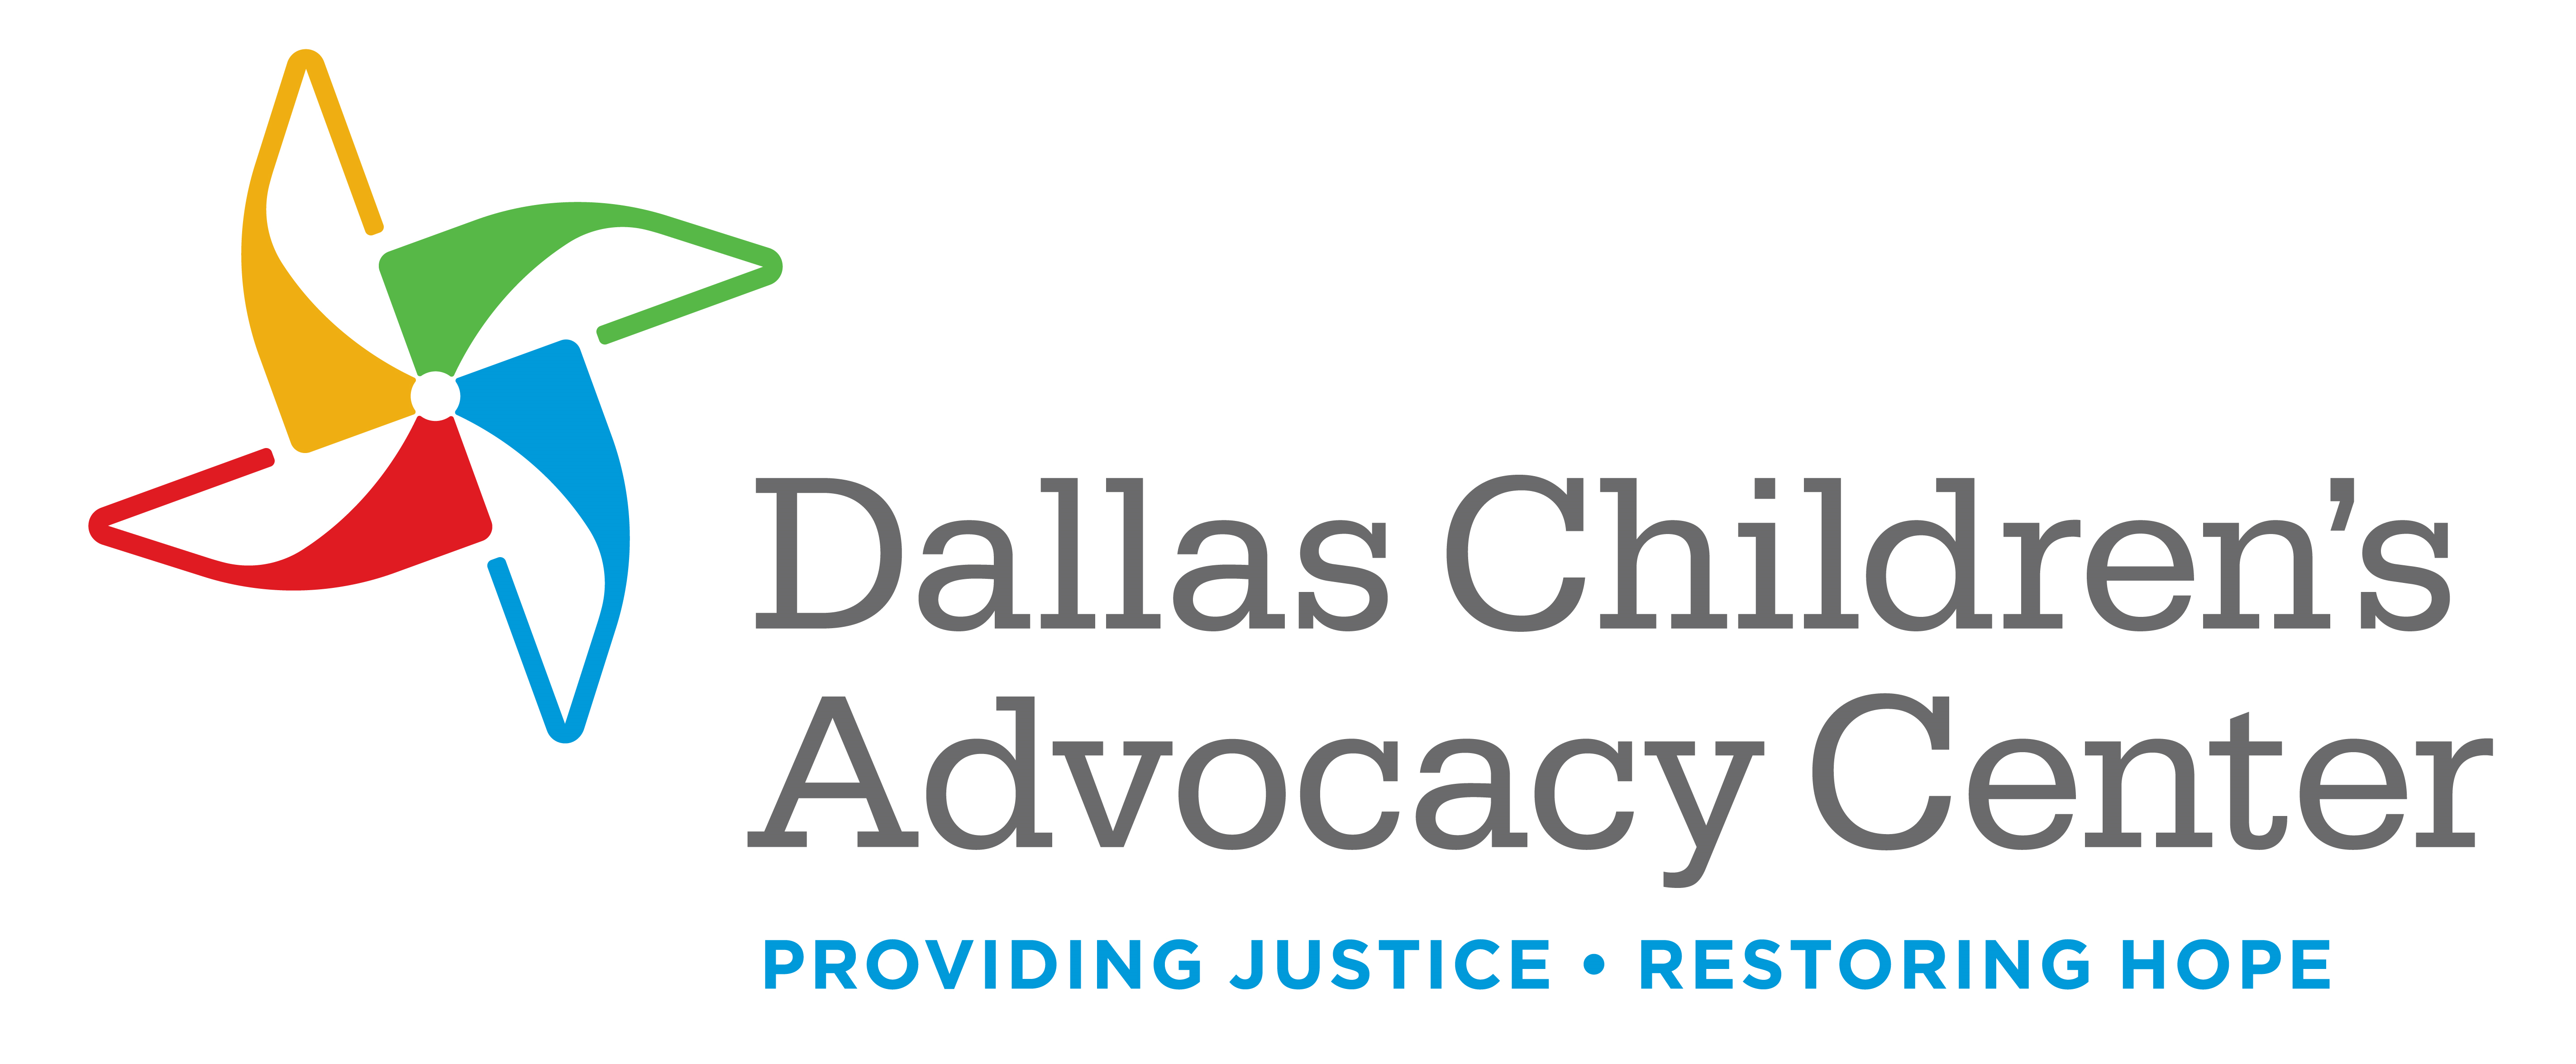 Dallas Children's Advocacy Center logo